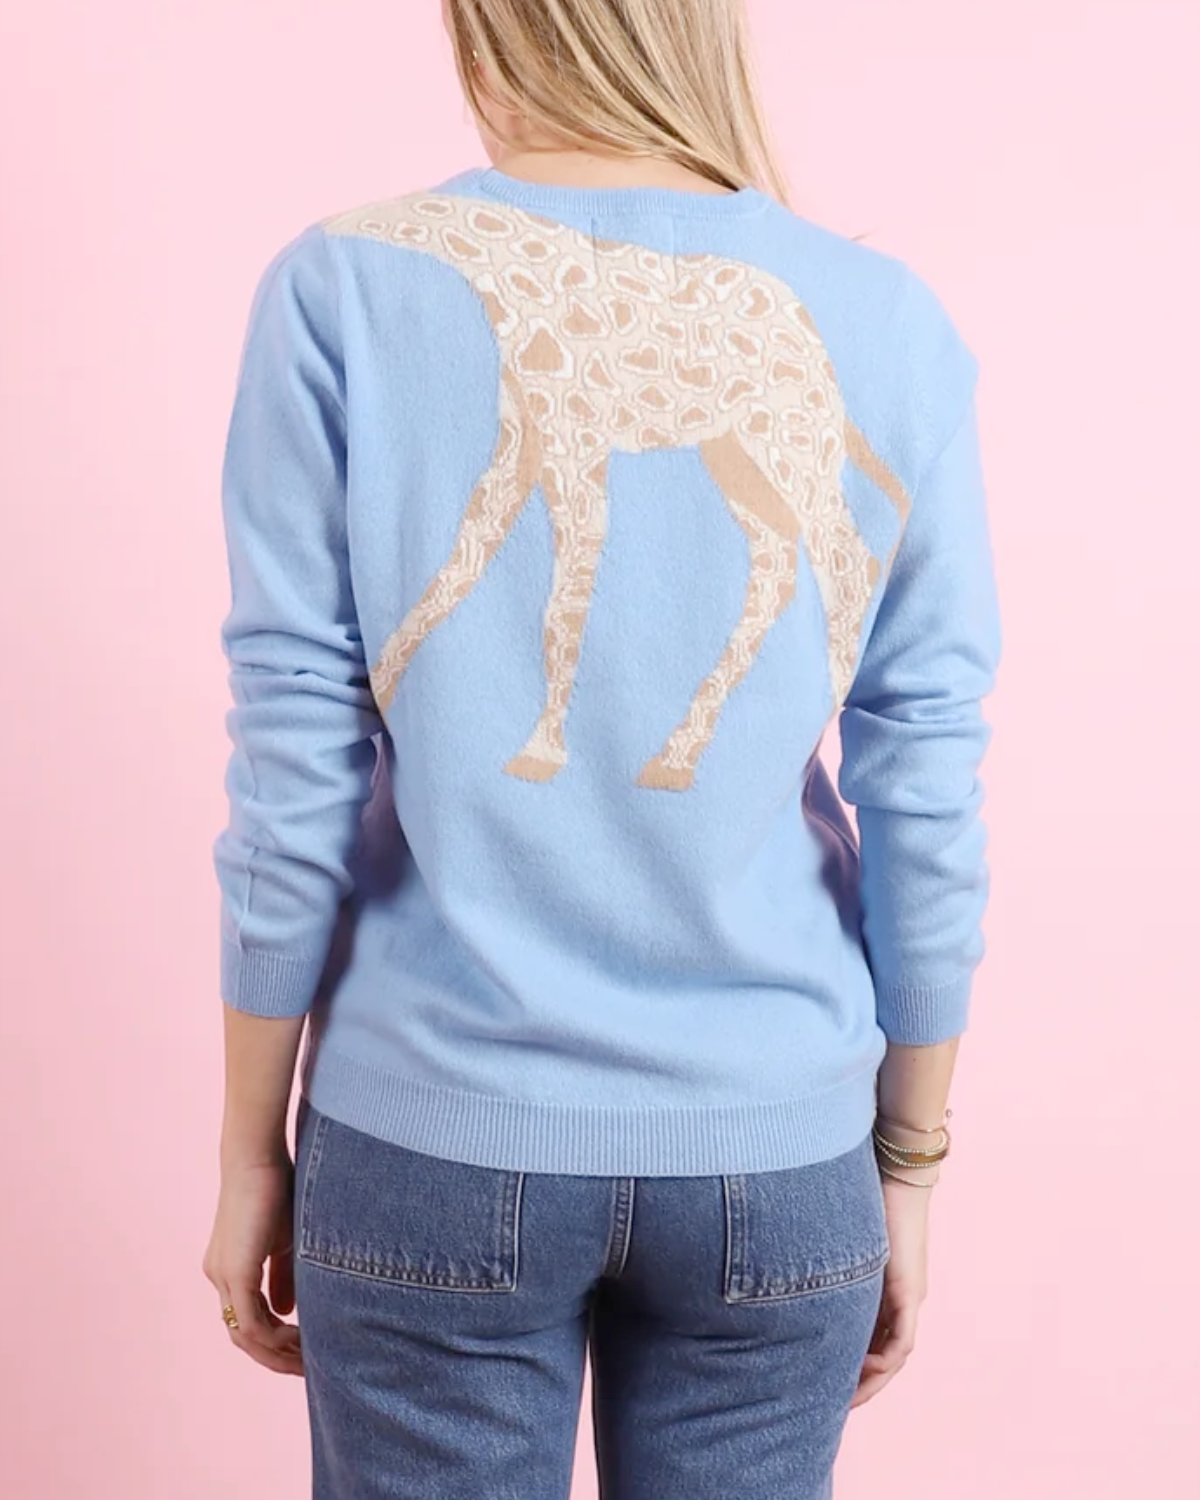 Giraffe Crewneck Sweater (Light Blue)